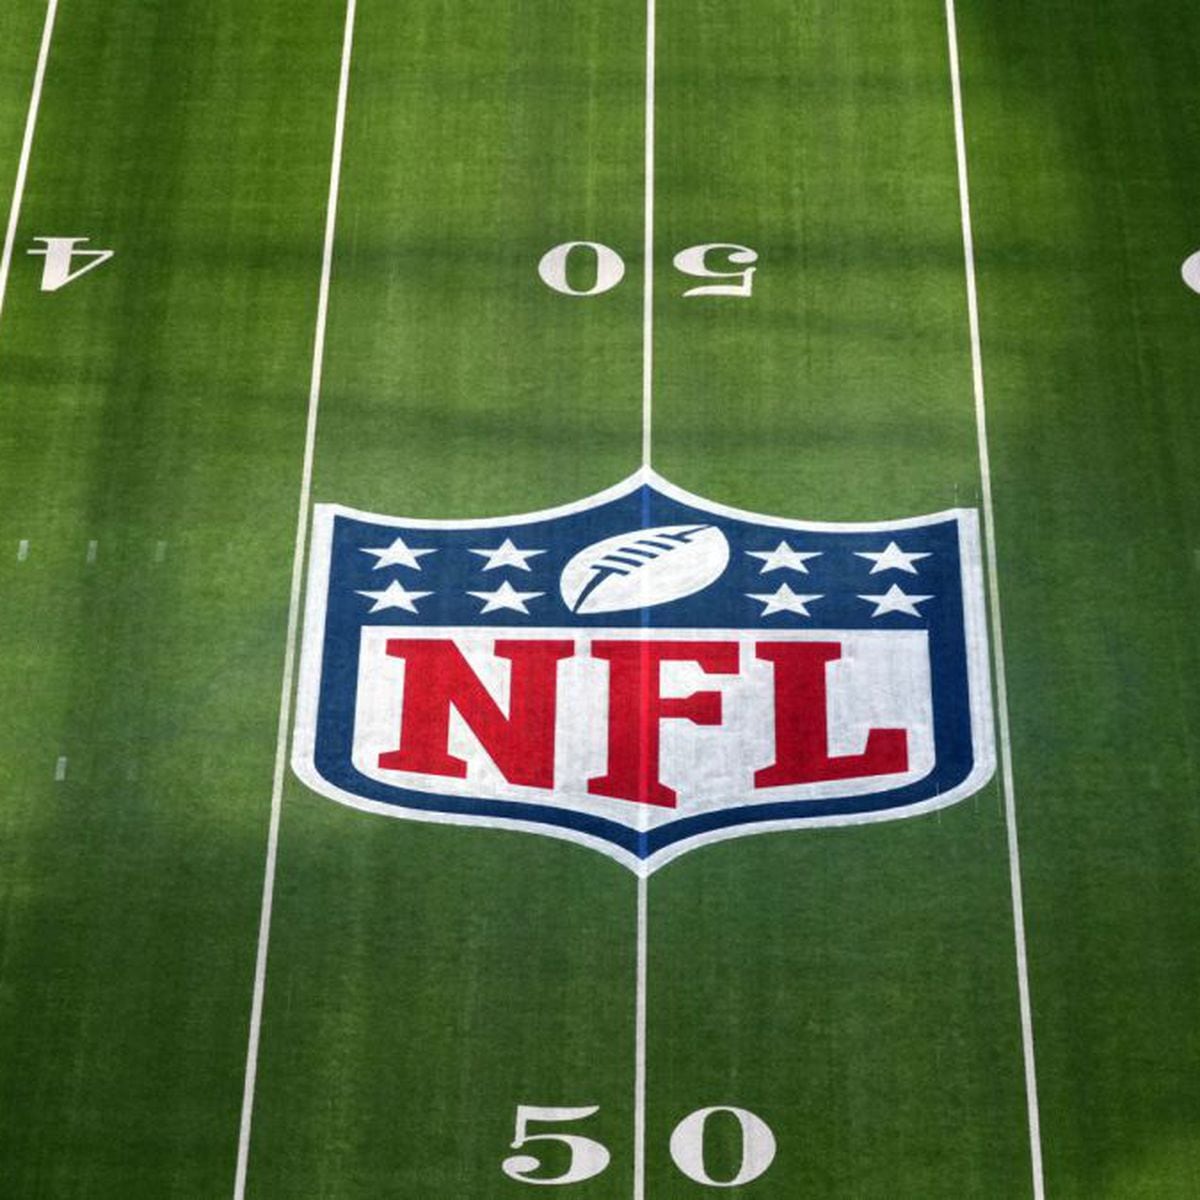 NFL announces important dates for 2023, 2024 seasons